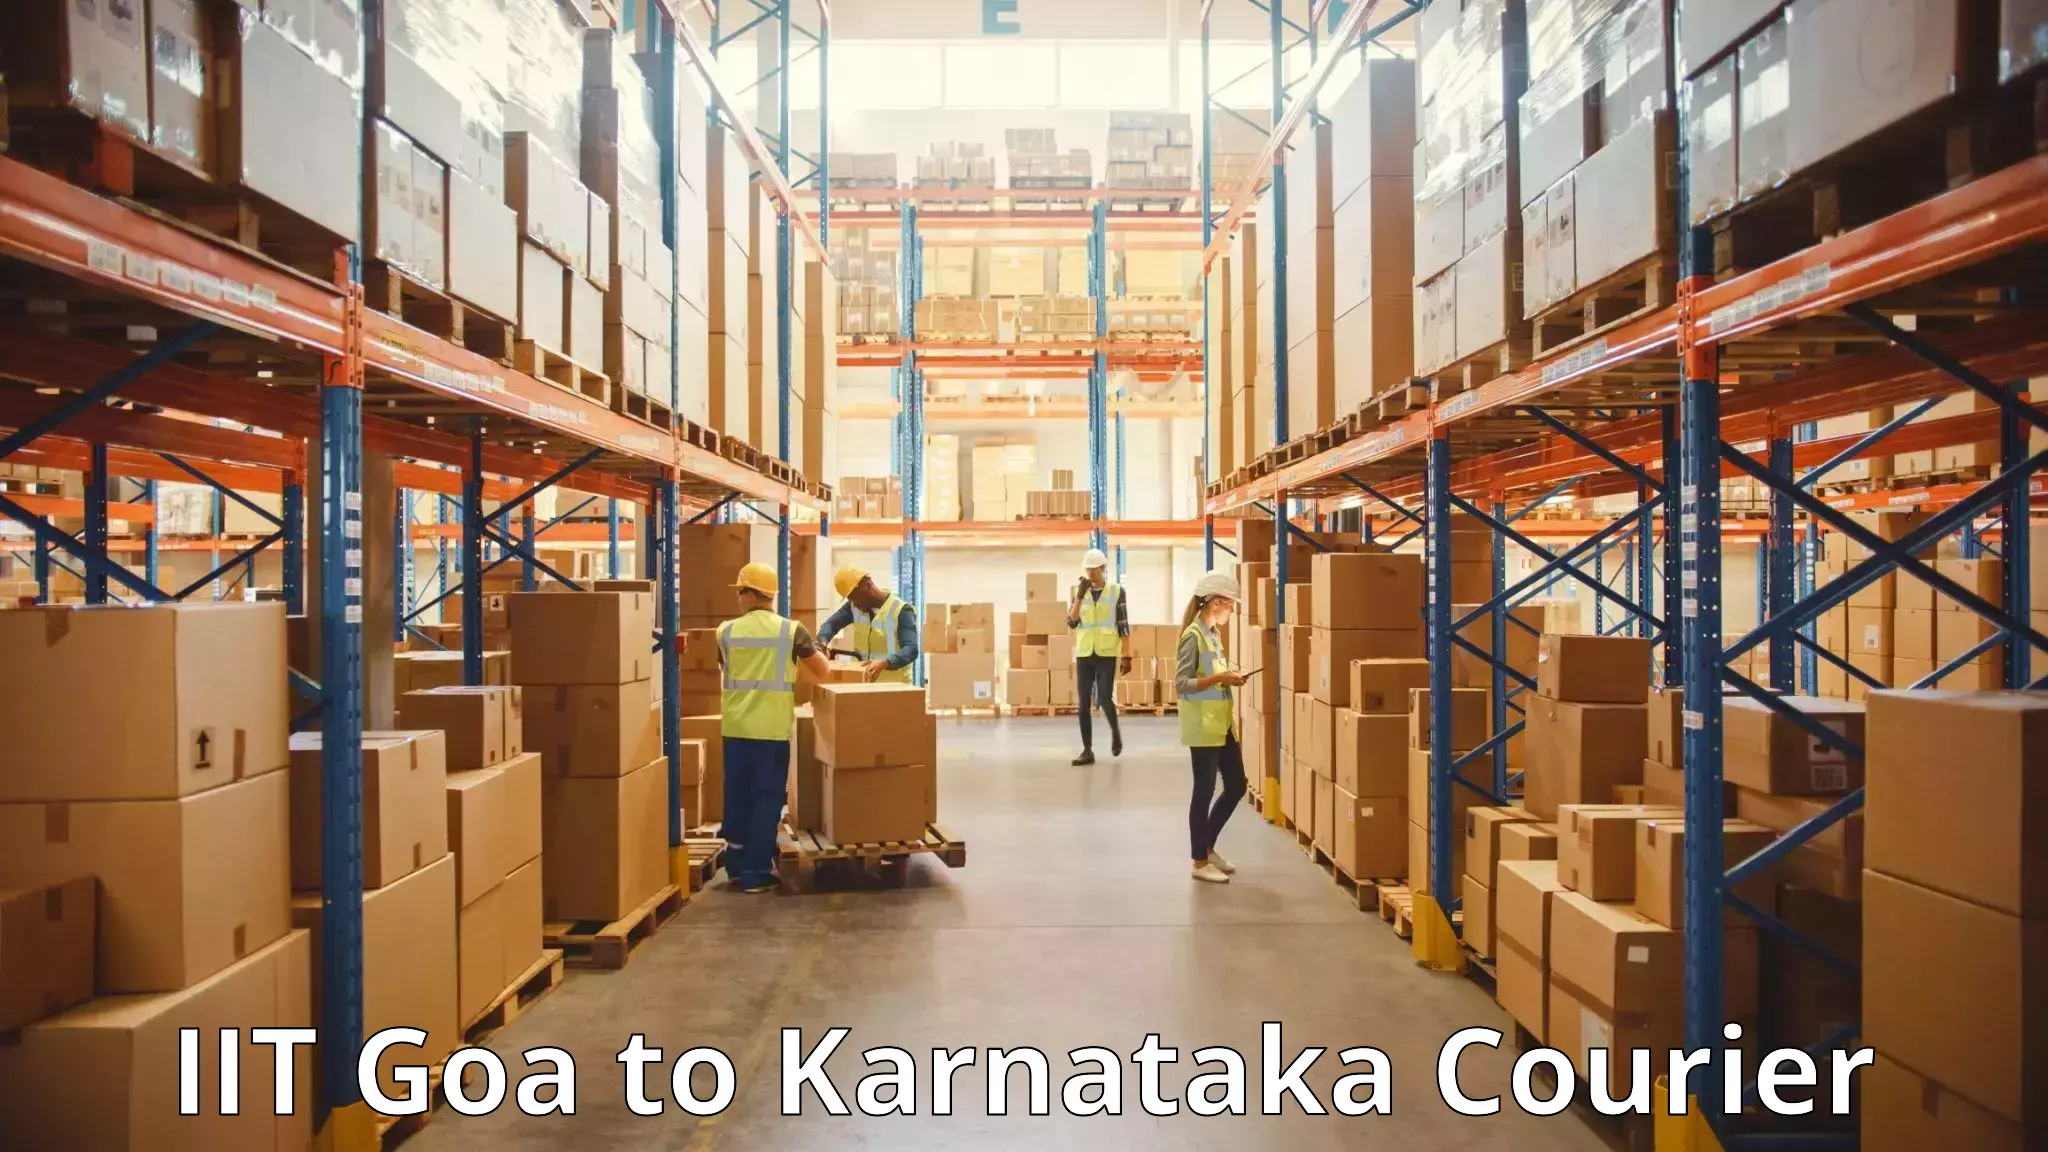 Express luggage delivery IIT Goa to Karnataka